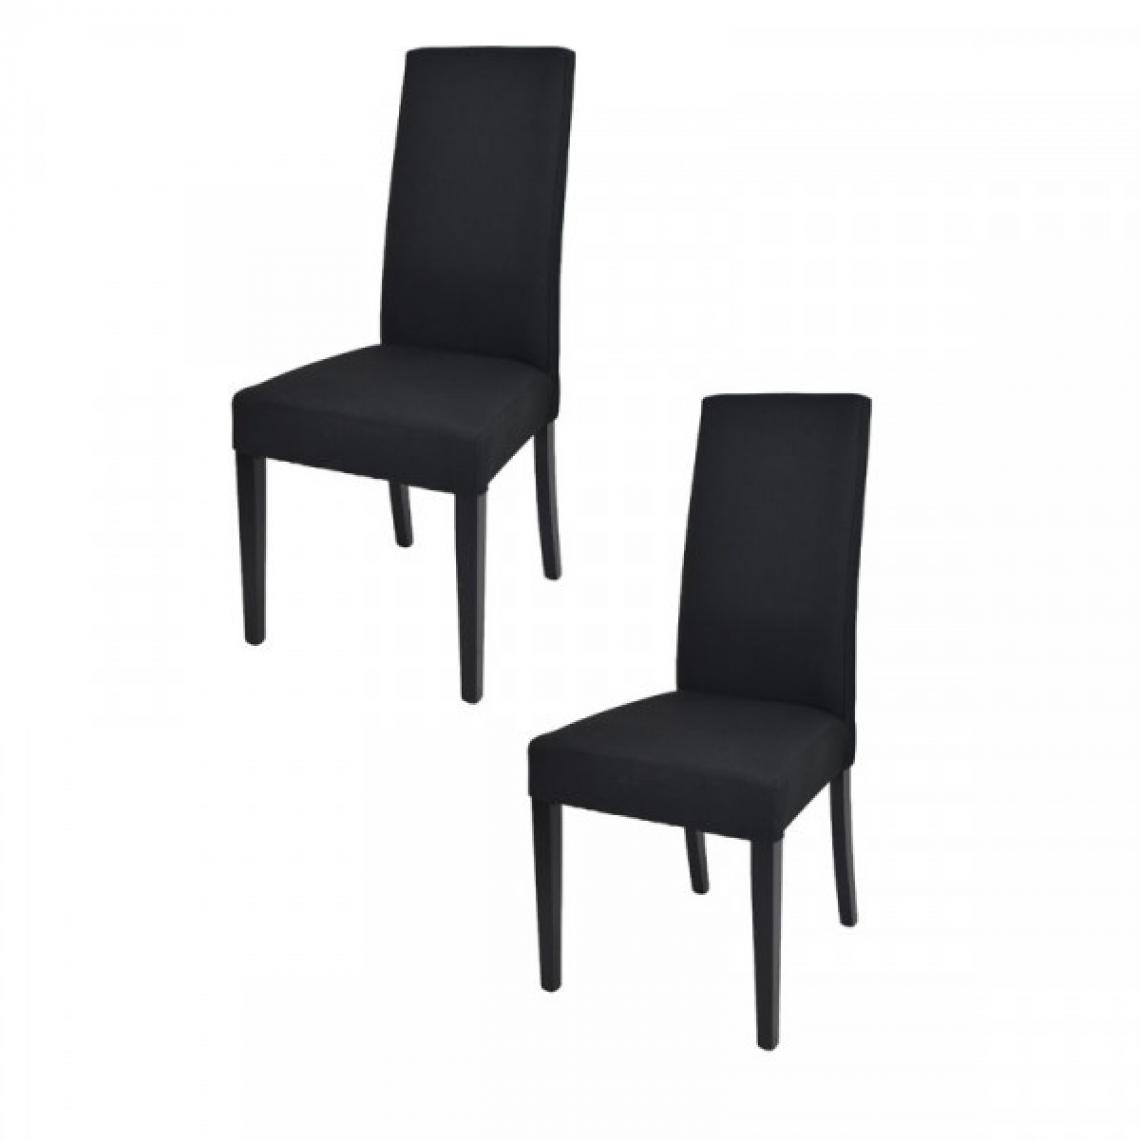 Dansmamaison - Duo de chaises tissu Noir - PISE - L 54 x l 46 x H 99 cm - Chaises